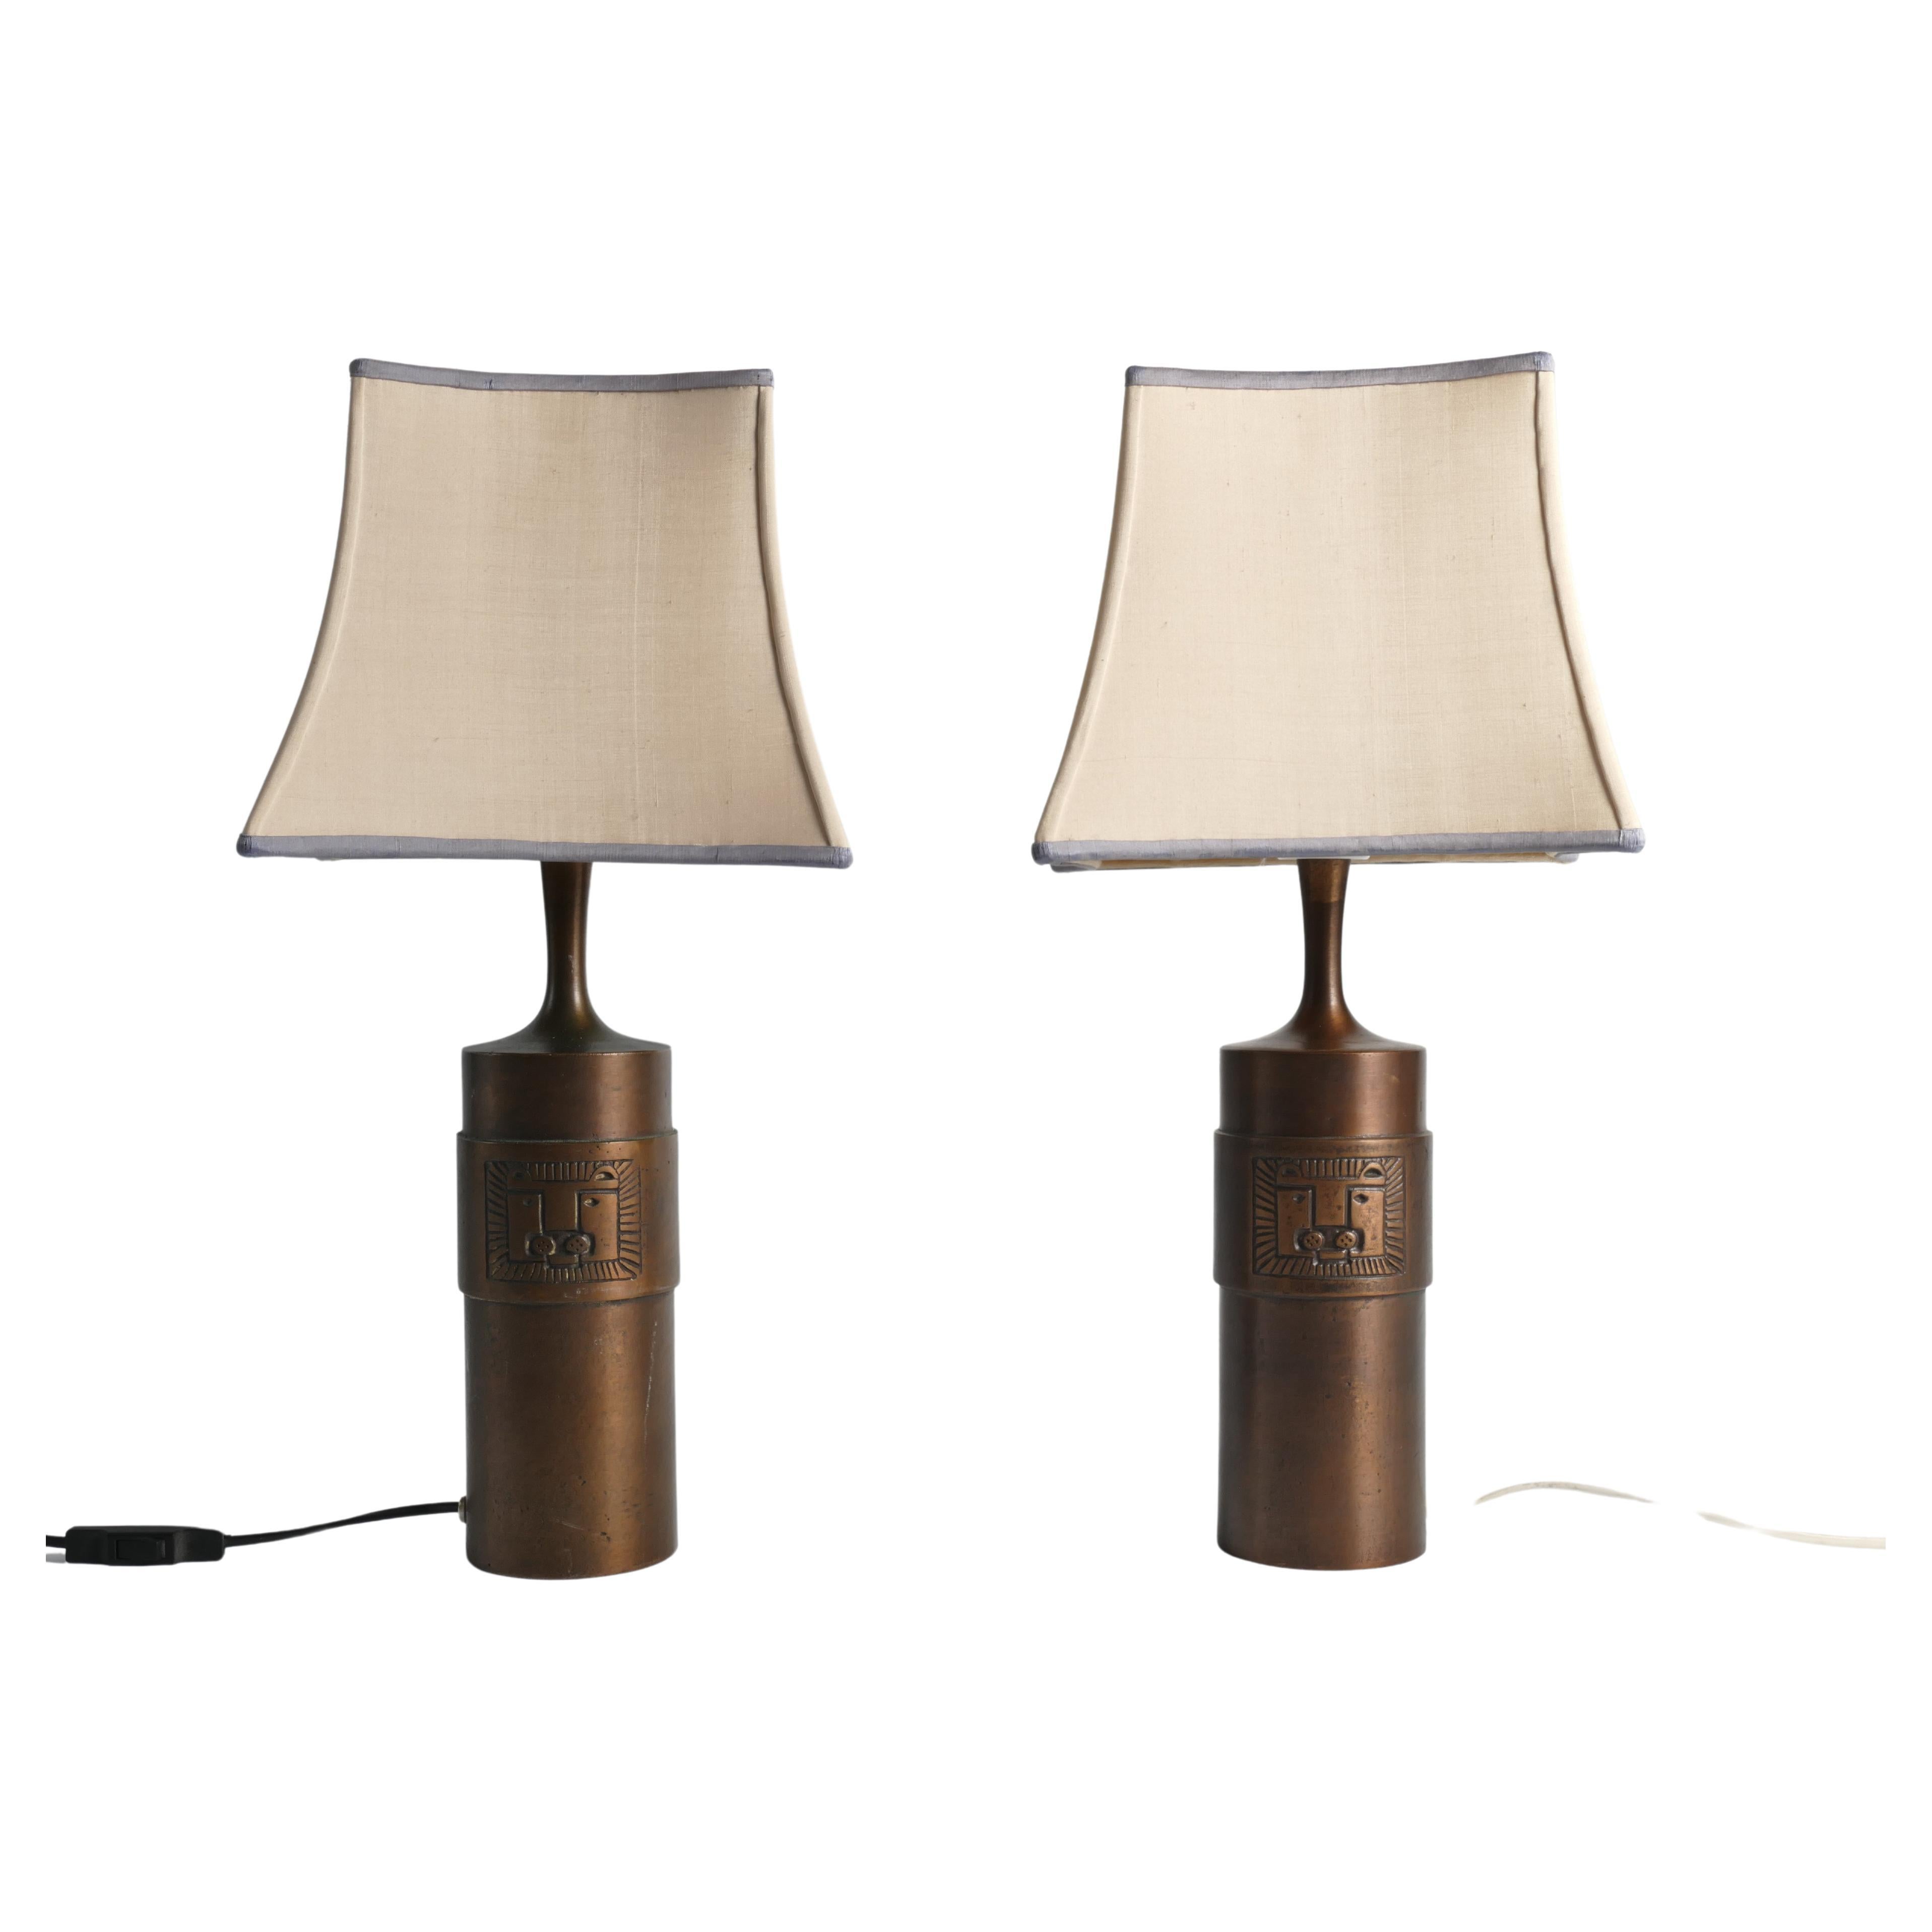 Diese beiden skandinavisch-modernen Tischlampen 